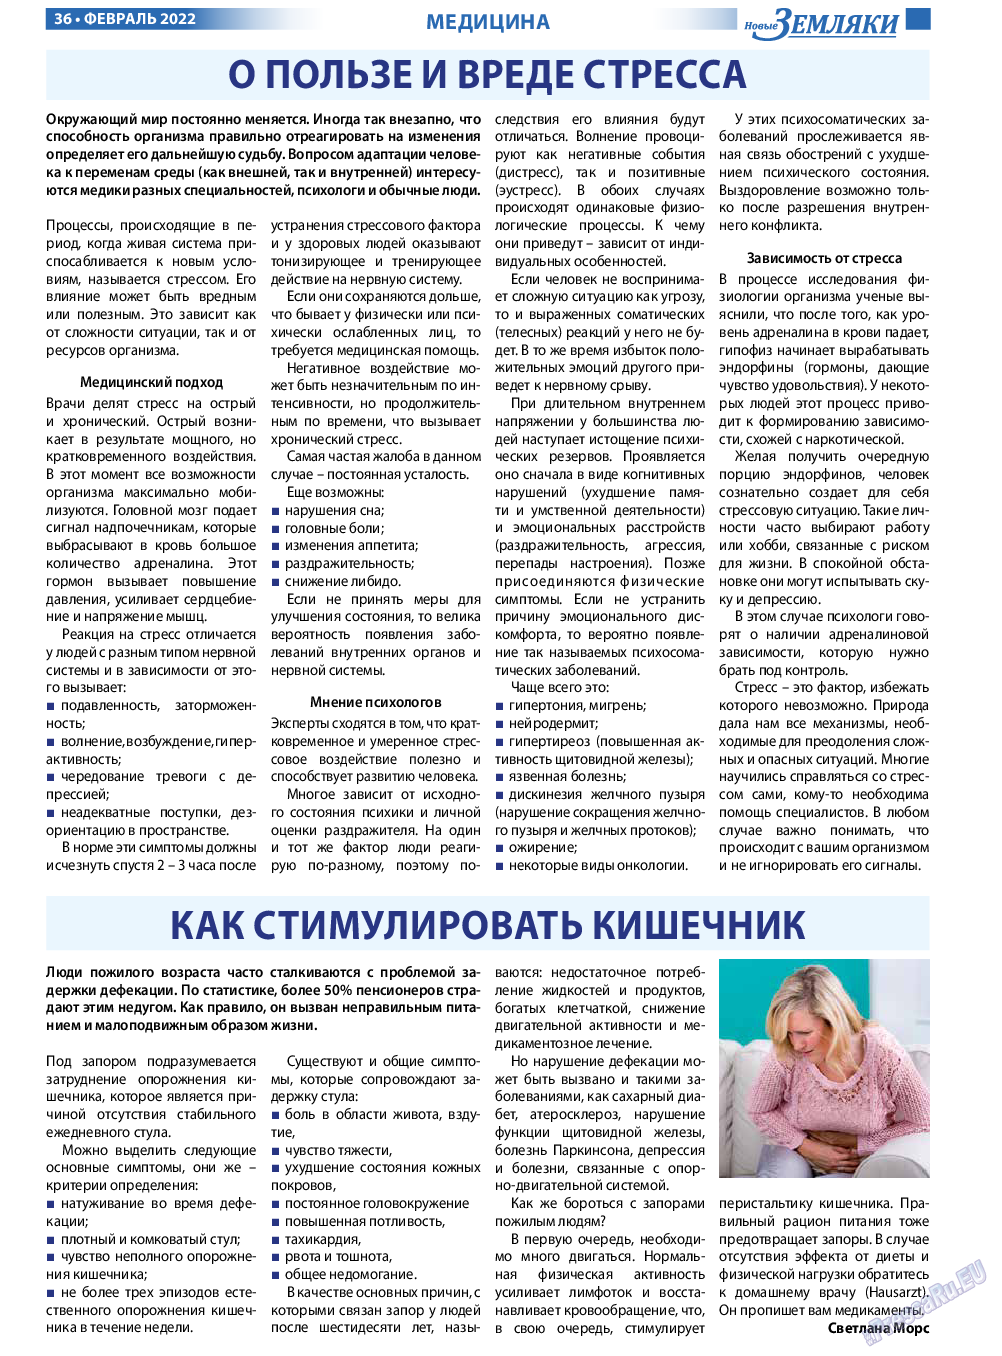 Новые Земляки, газета. 2022 №2 стр.36